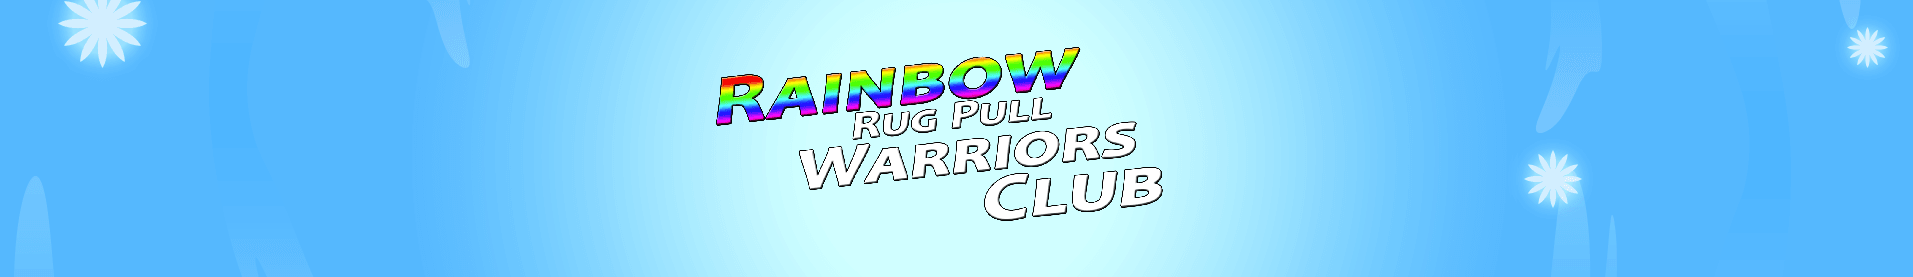 Rainbow_Rug_Pull_Warriors_Club 배너